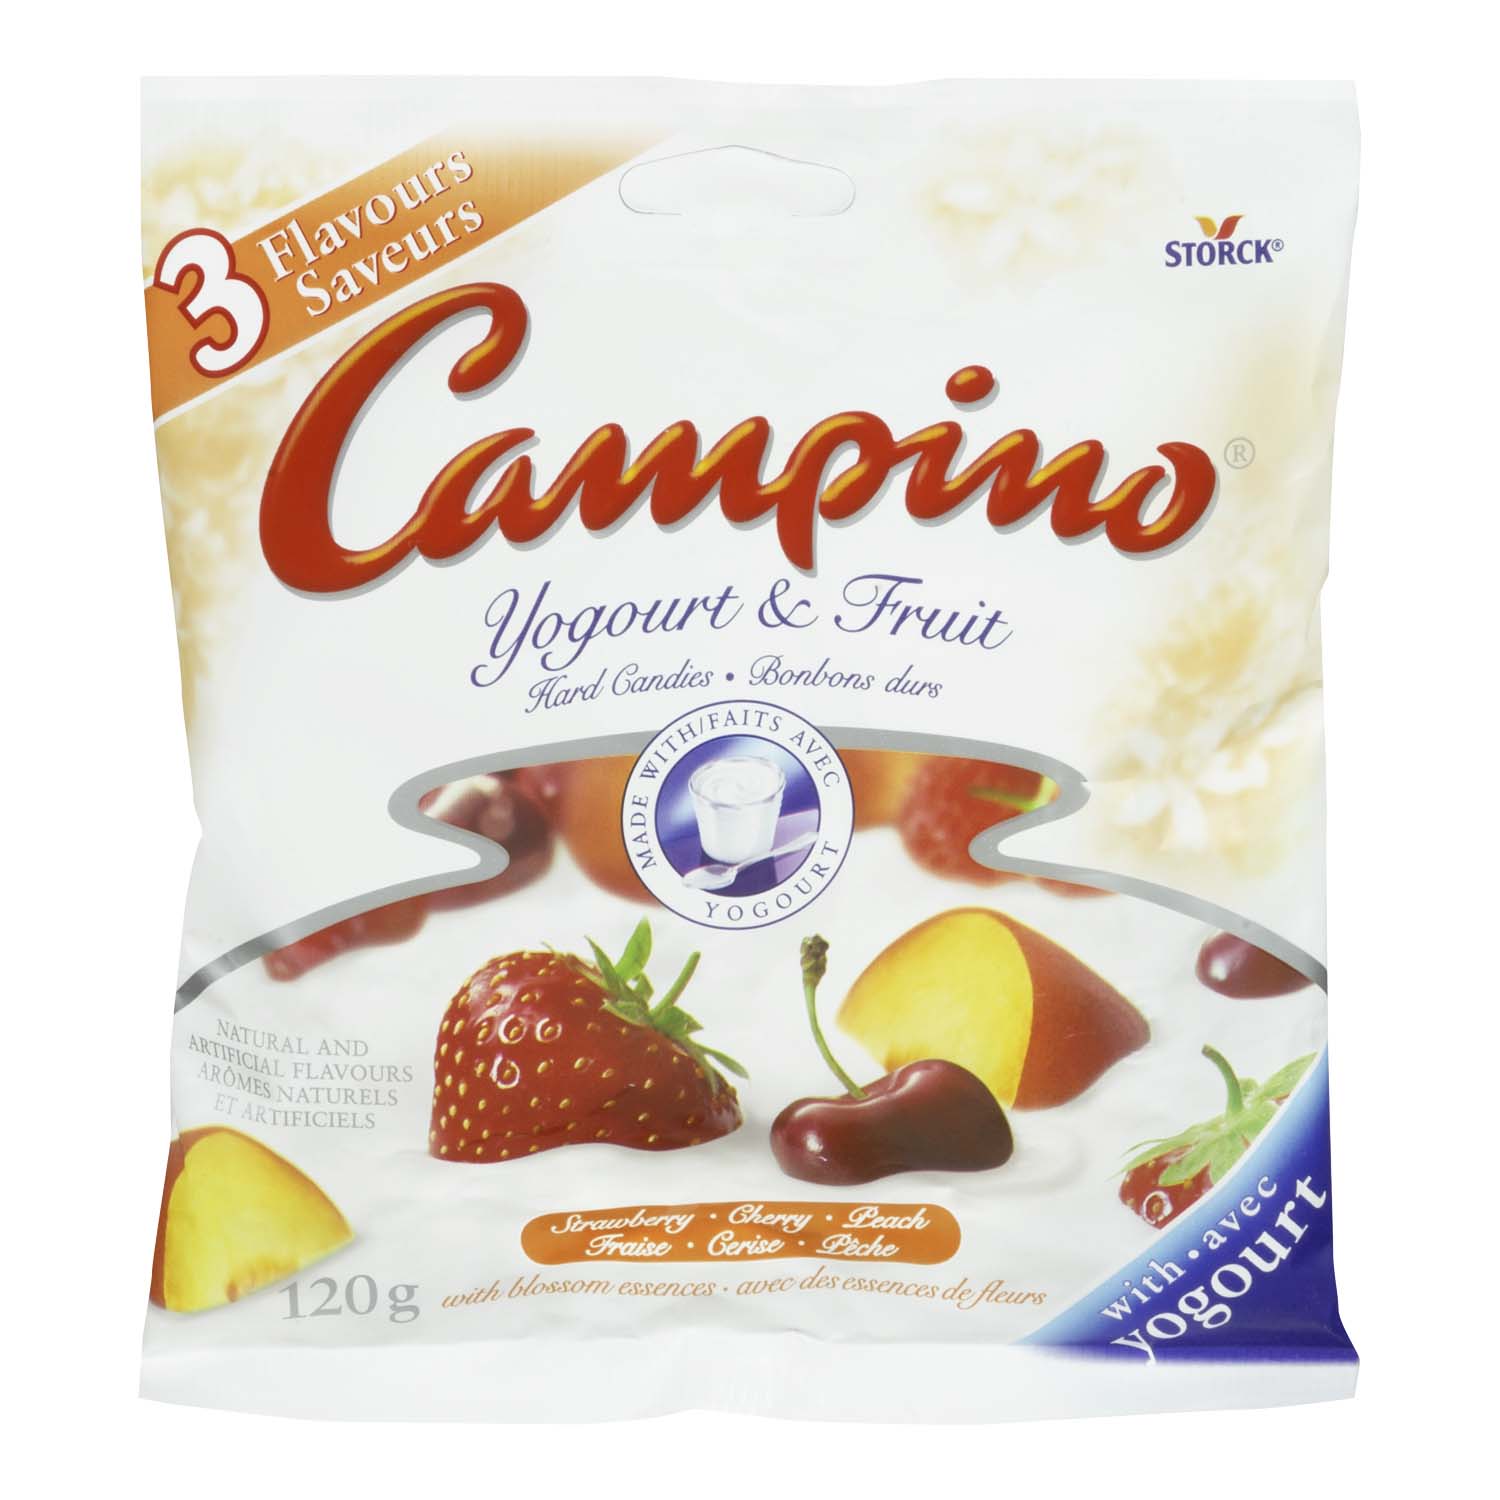 Campino Yogourt & Fruit Hard Candies Strawberry, Cherry, Peach 120 g